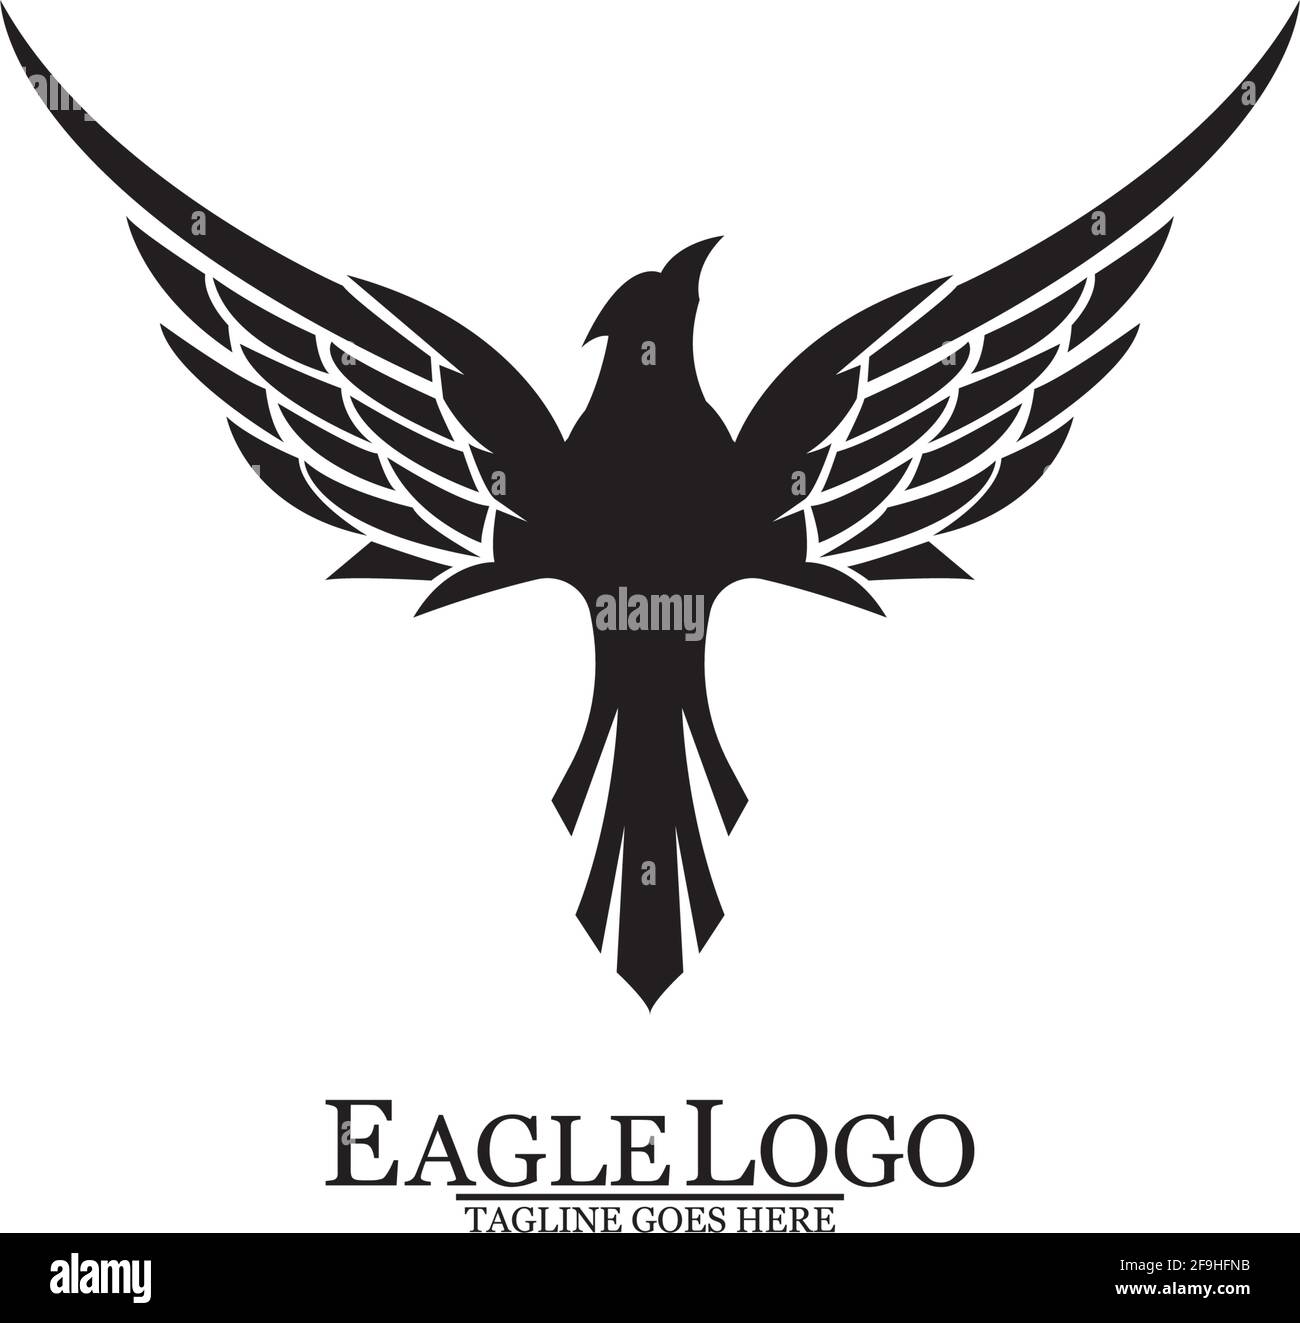 Eagle icon logo design vector template Stock Vector Image & Art - Alamy